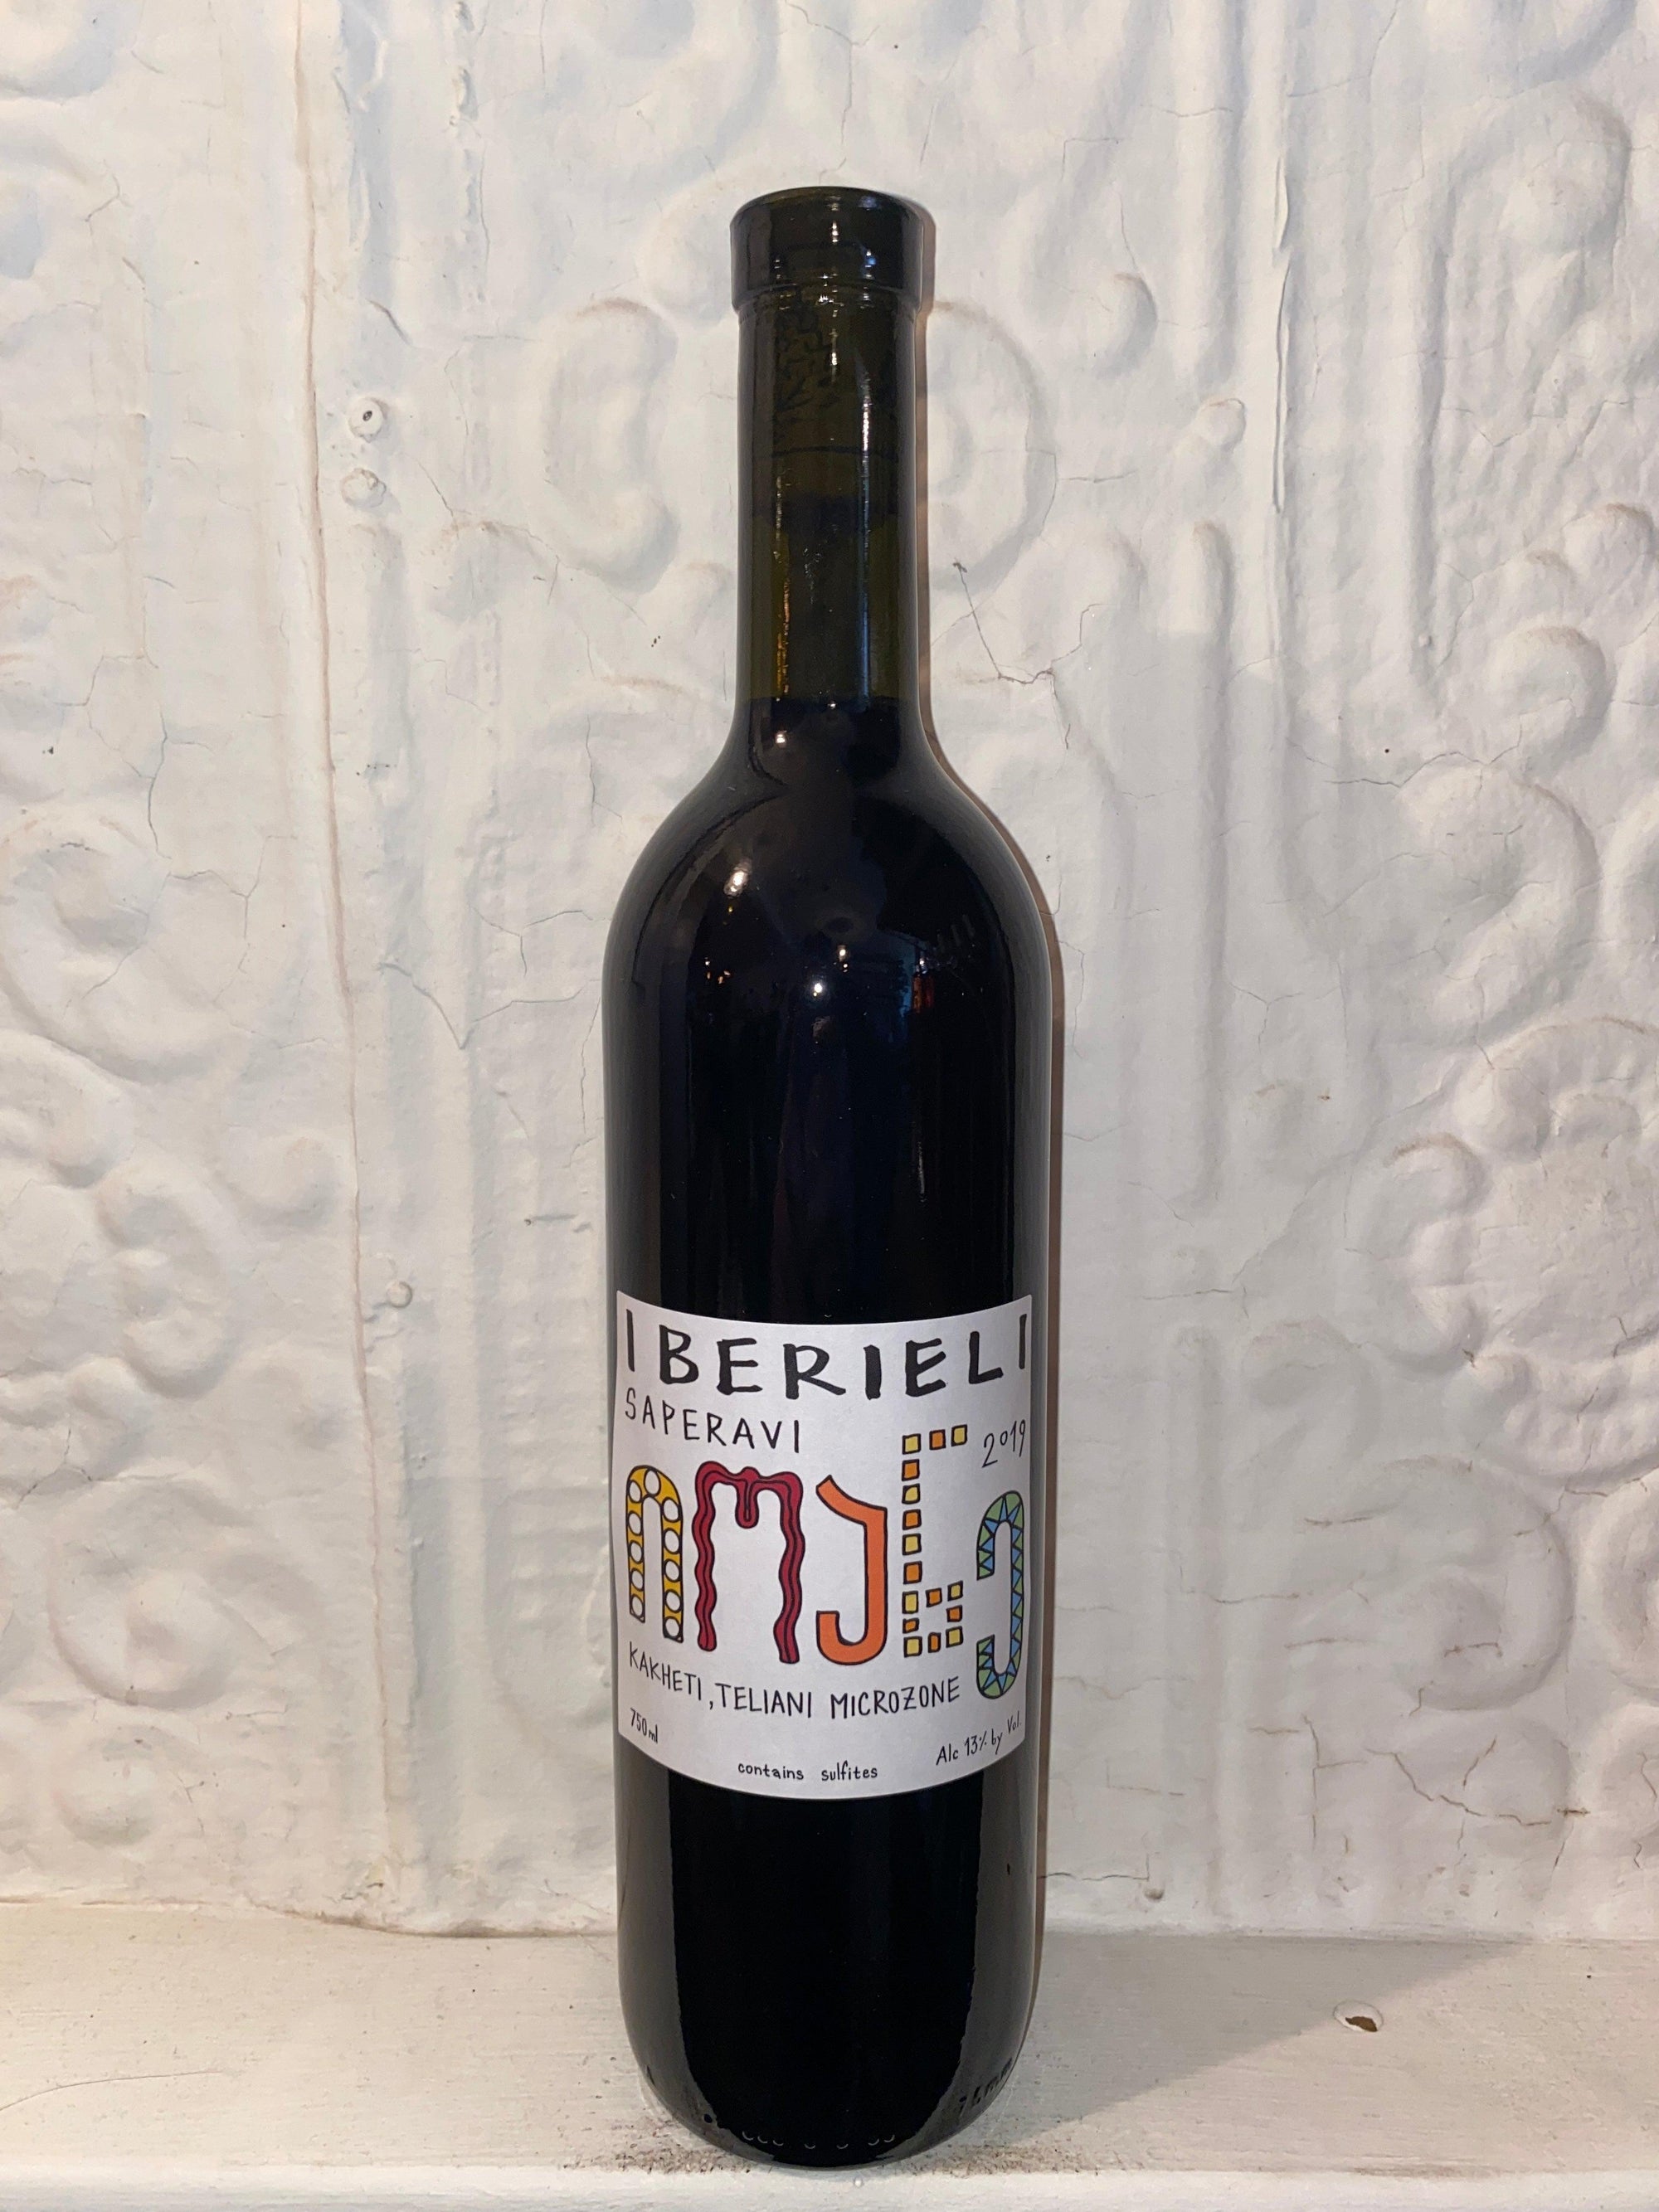 Saperavi, Iberieli 2019 (Kakheti, Georgia)-Wine-Bibber & Bell